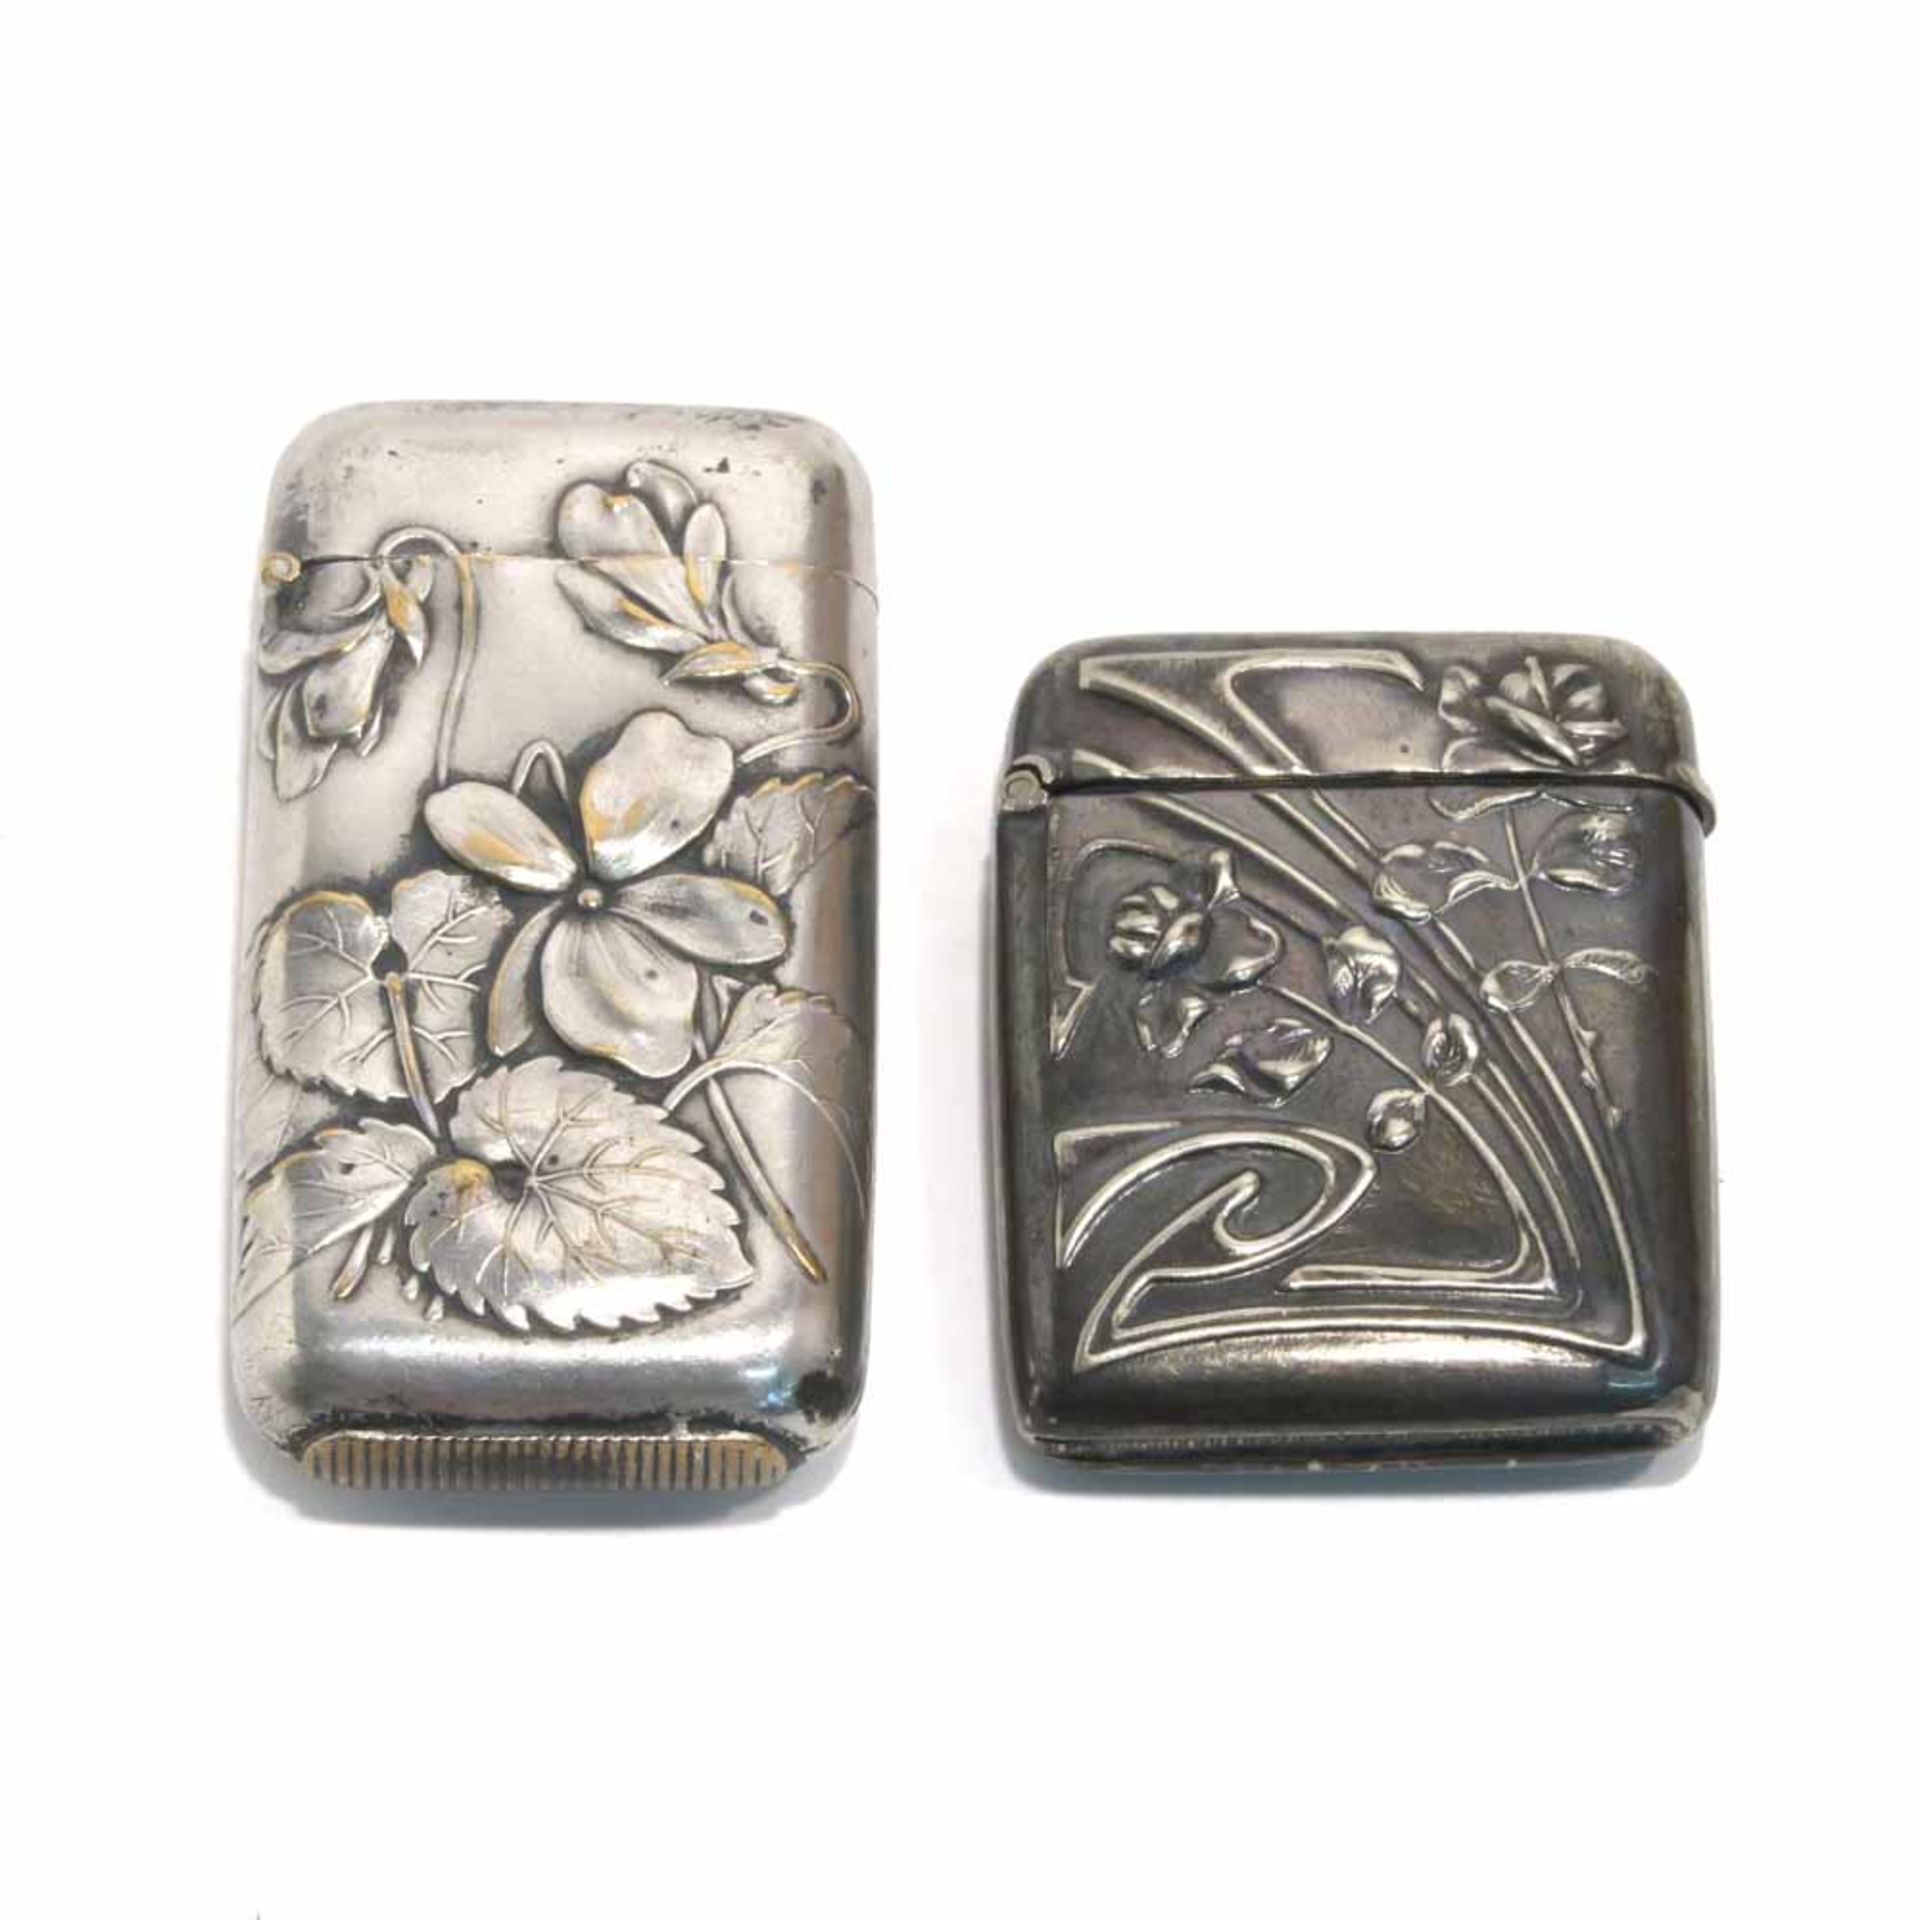 Zwei StreichholzdosenTwo vesta cases (match safes)Um 1900Alpacca Silber bzw. versilbert (